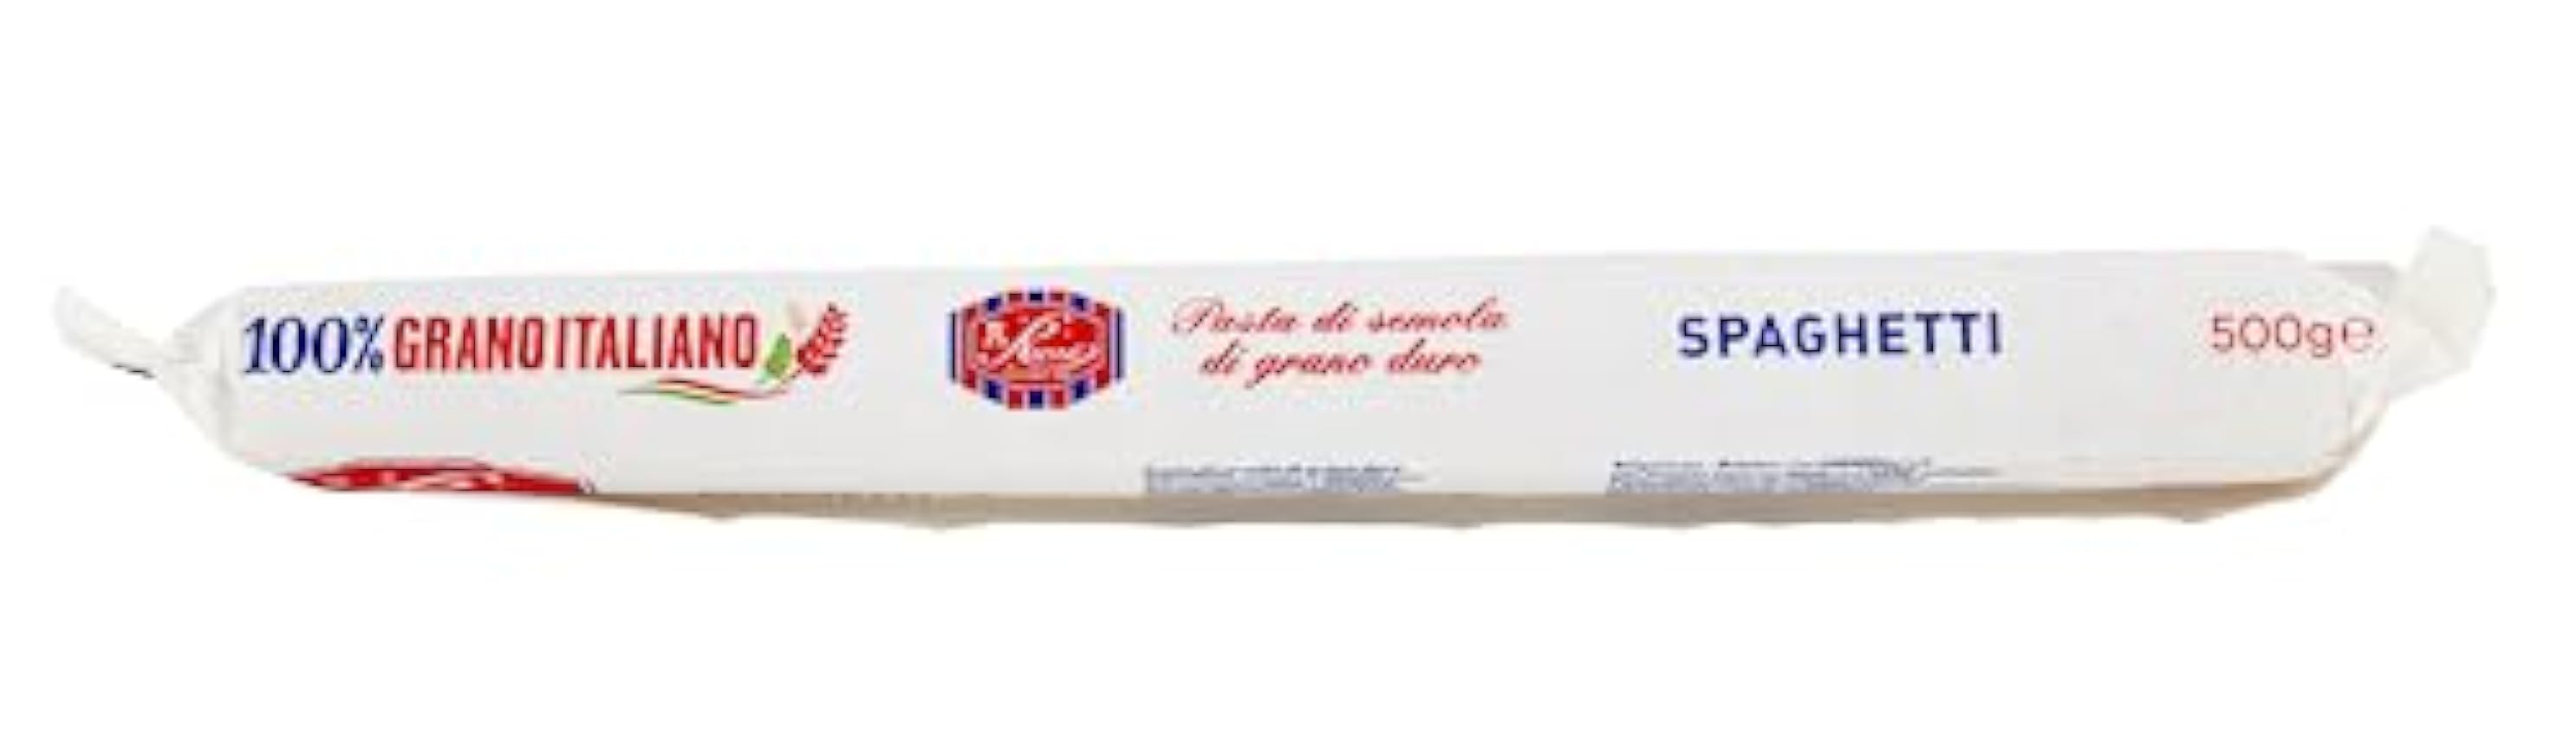 Russo Spaghetti N°72 Lot de 24 pâtes à la semoule de blé dur, 100 % blé italien, paquet de 500 g + boîte de 400 g My1q9dhb